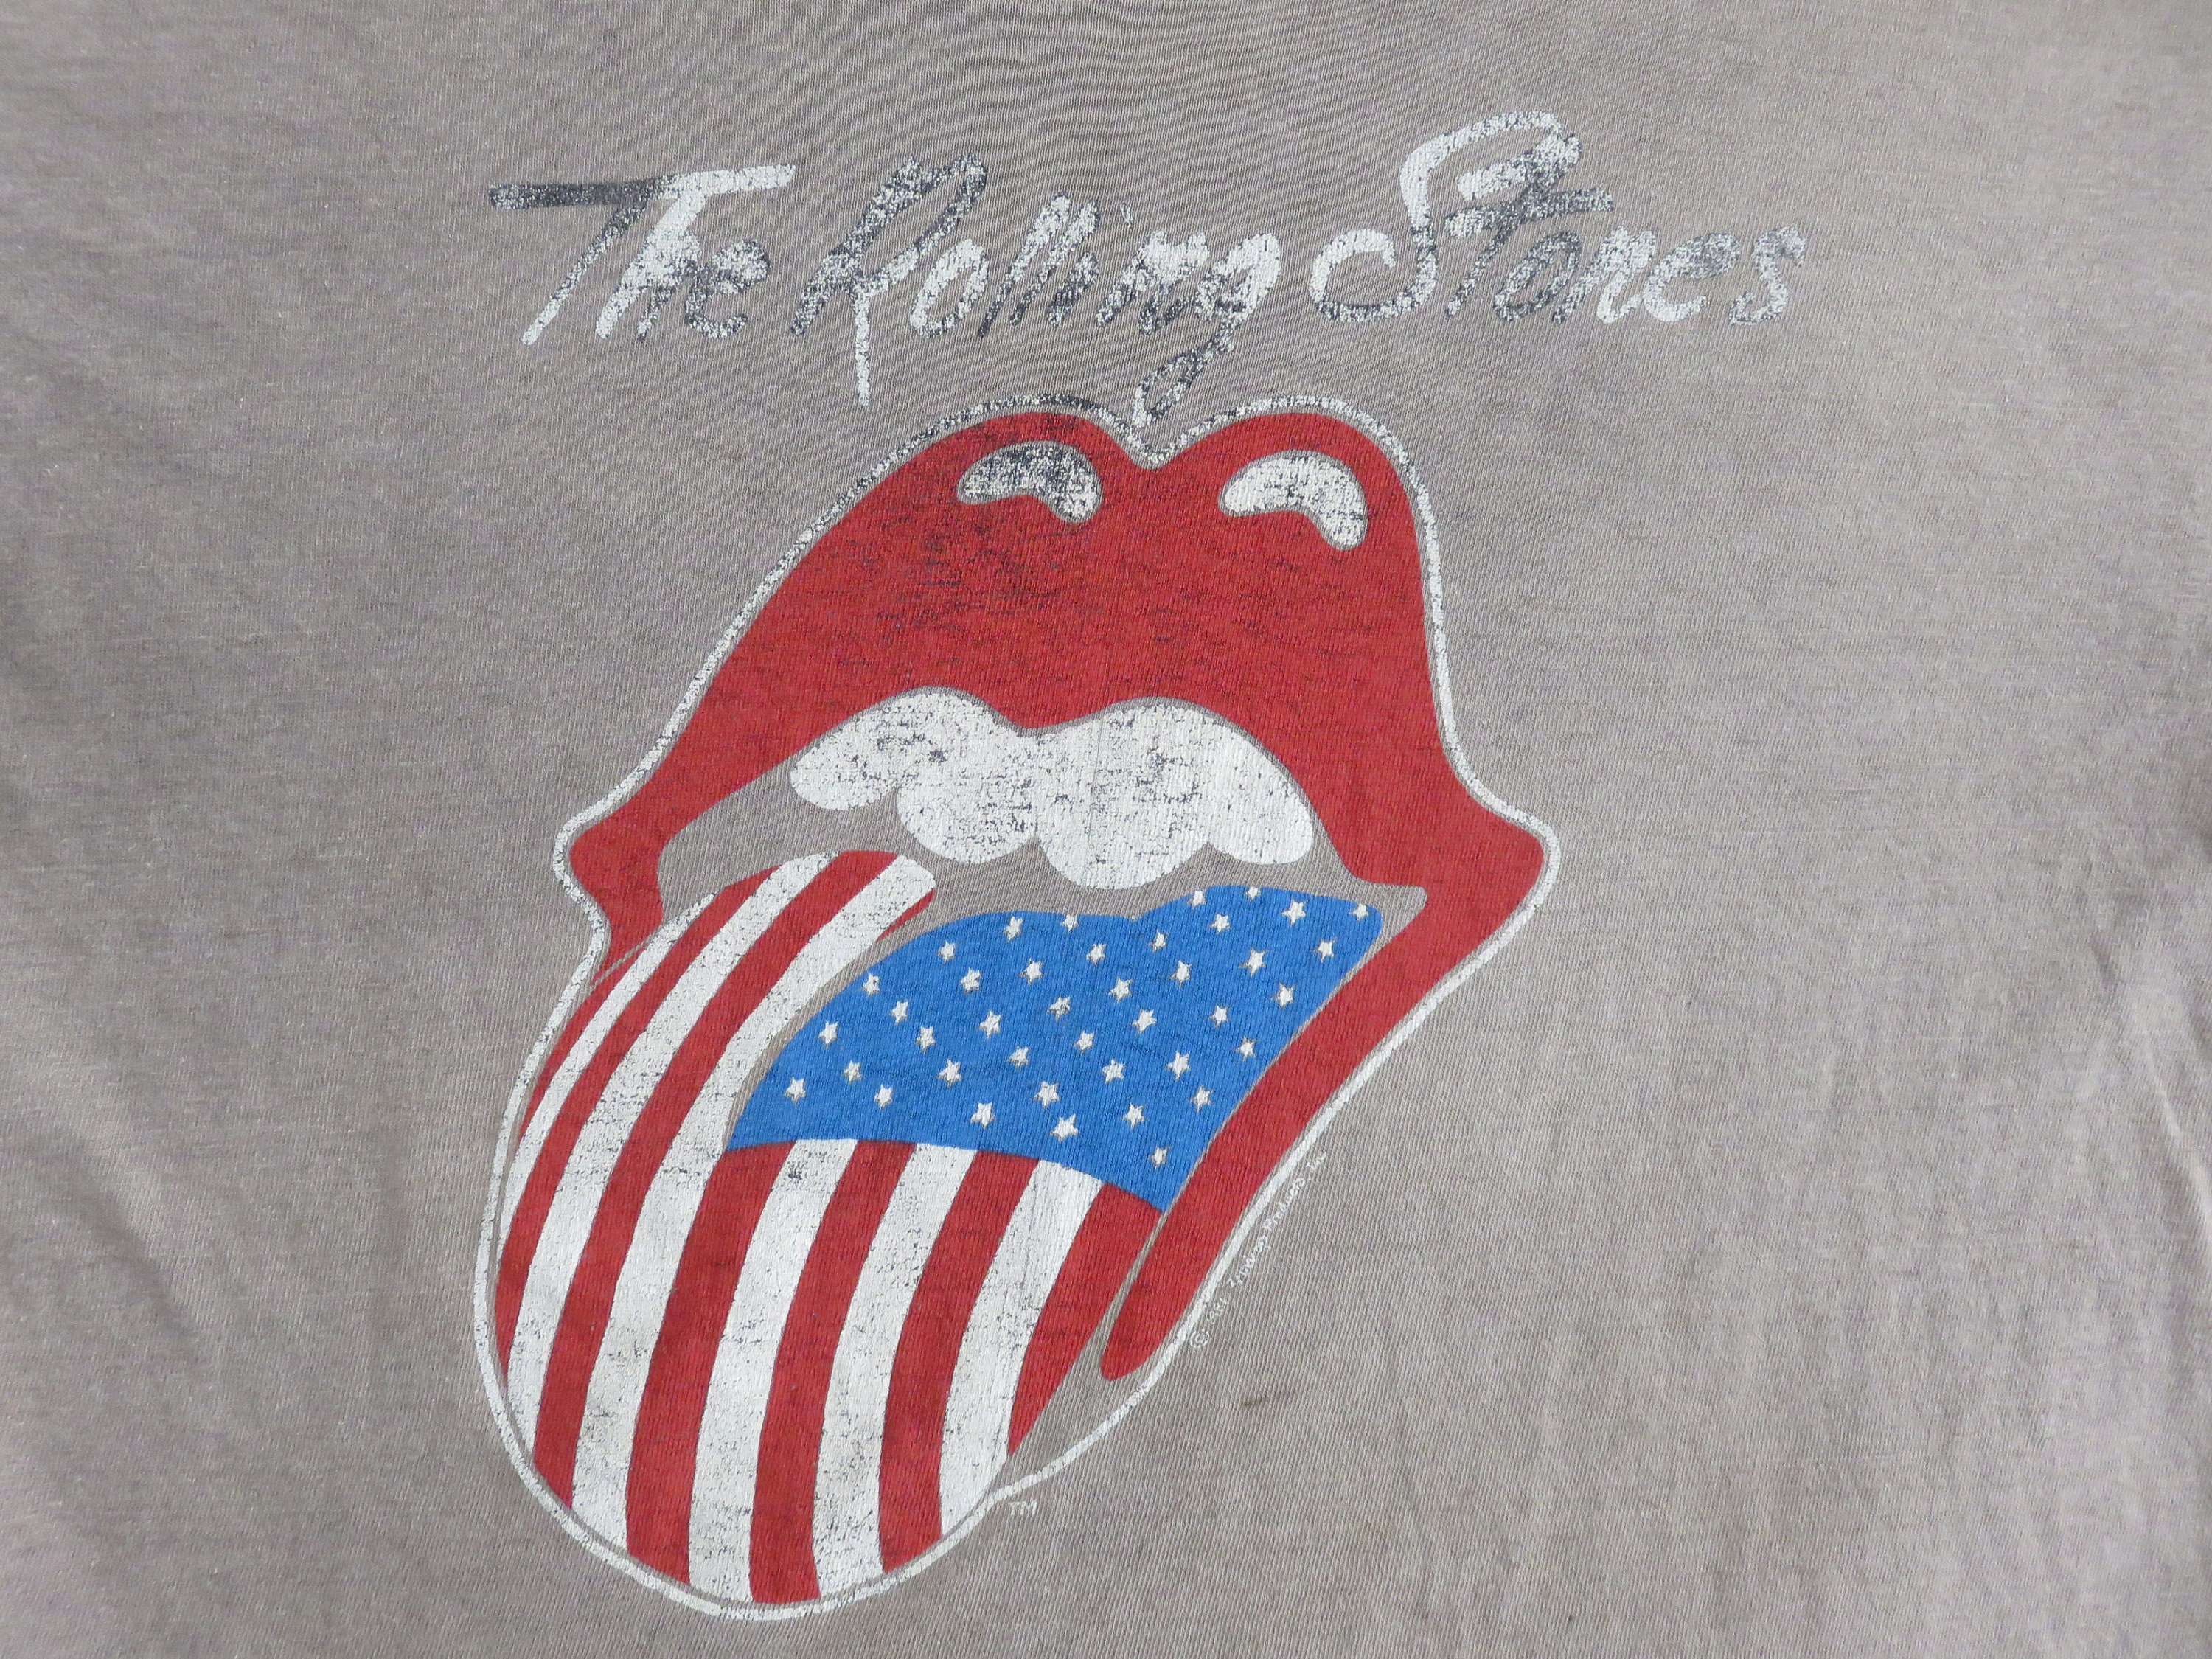 rolling stones 1982 tour t shirt